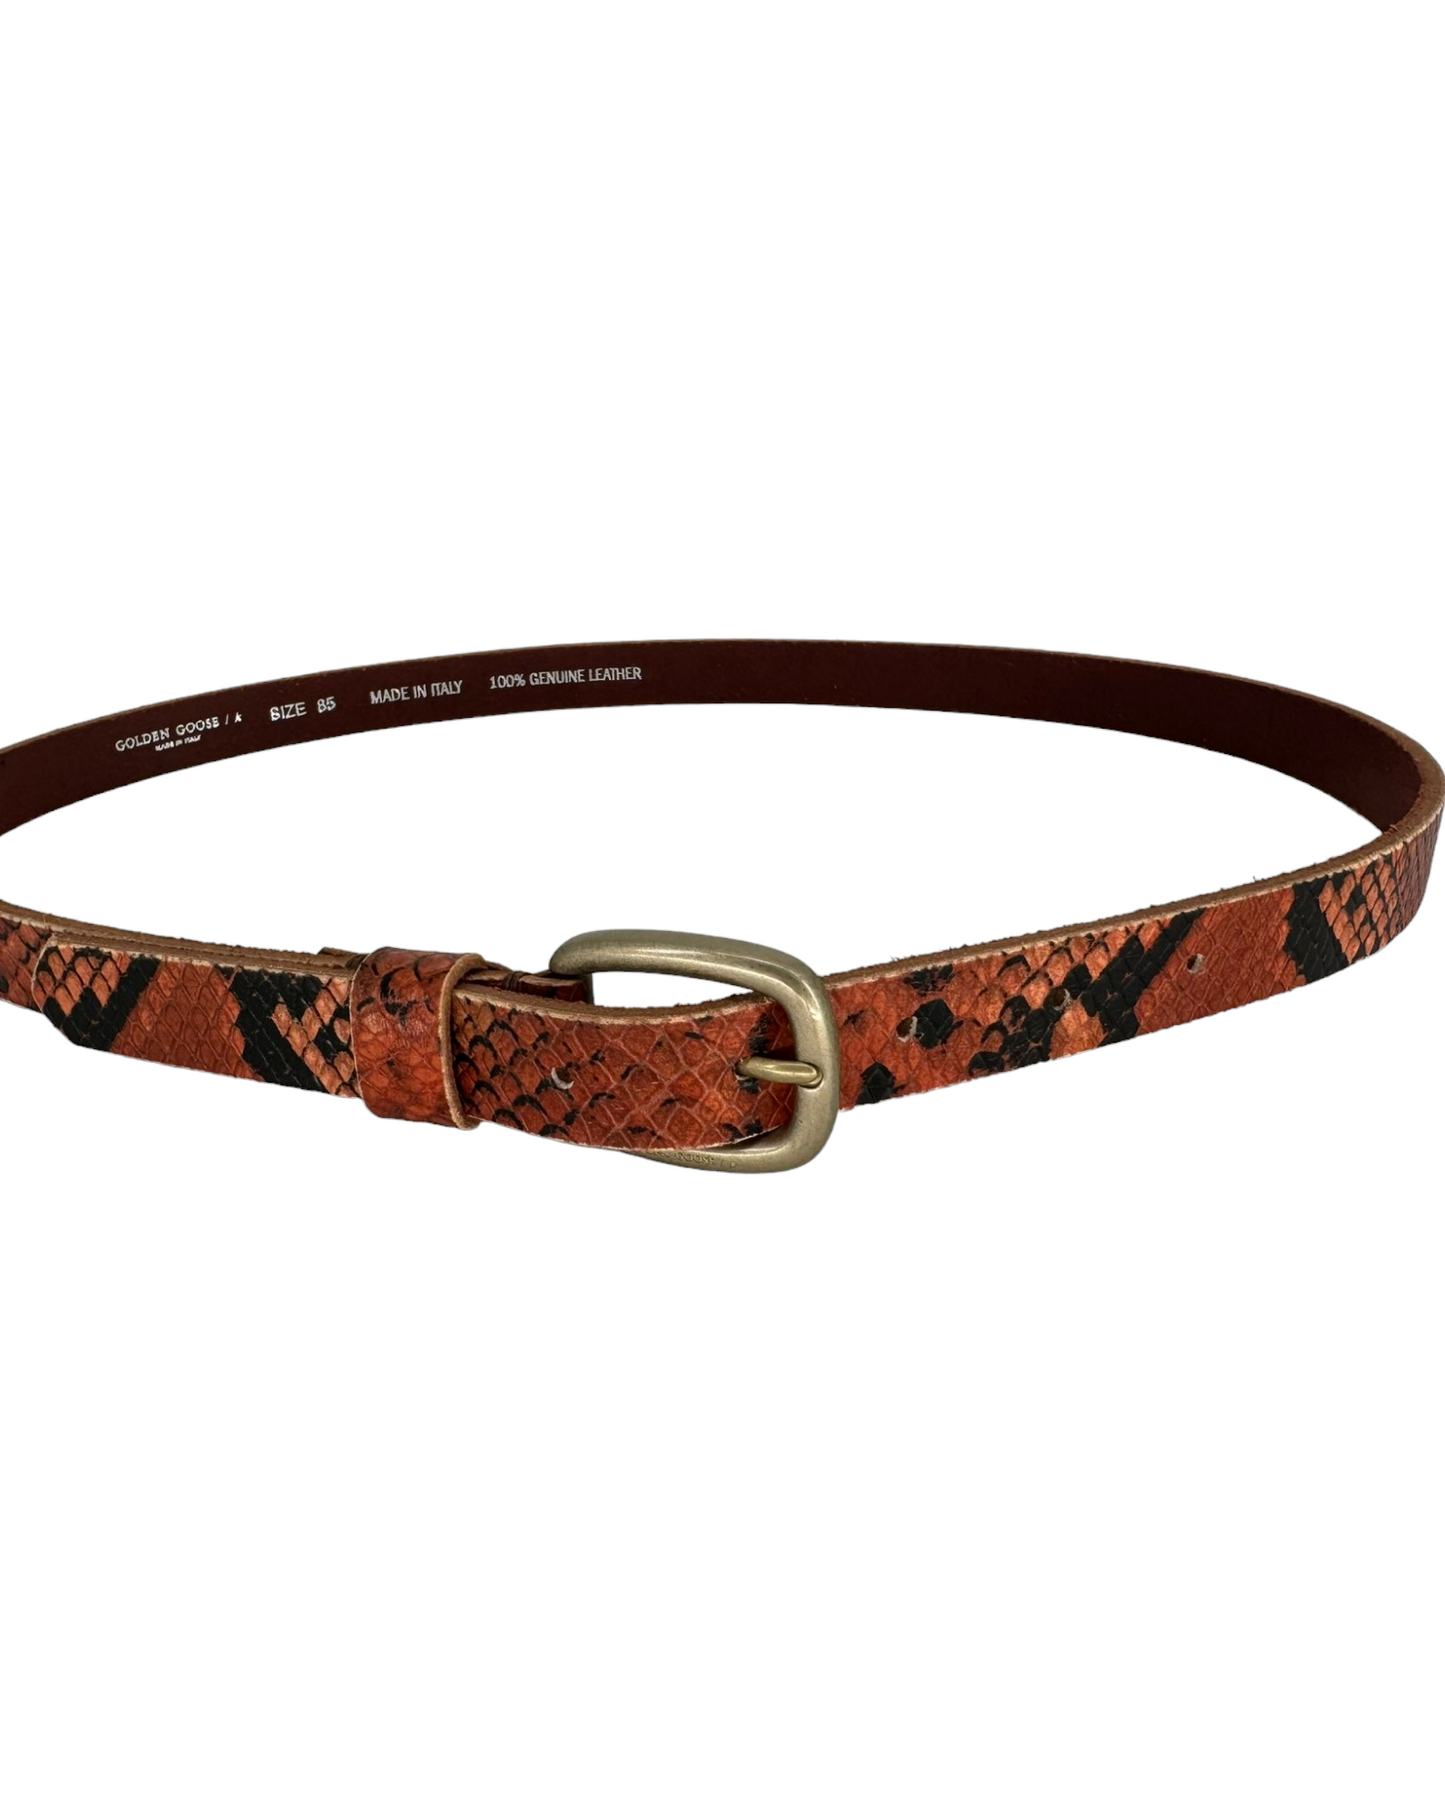 Houston leather belt